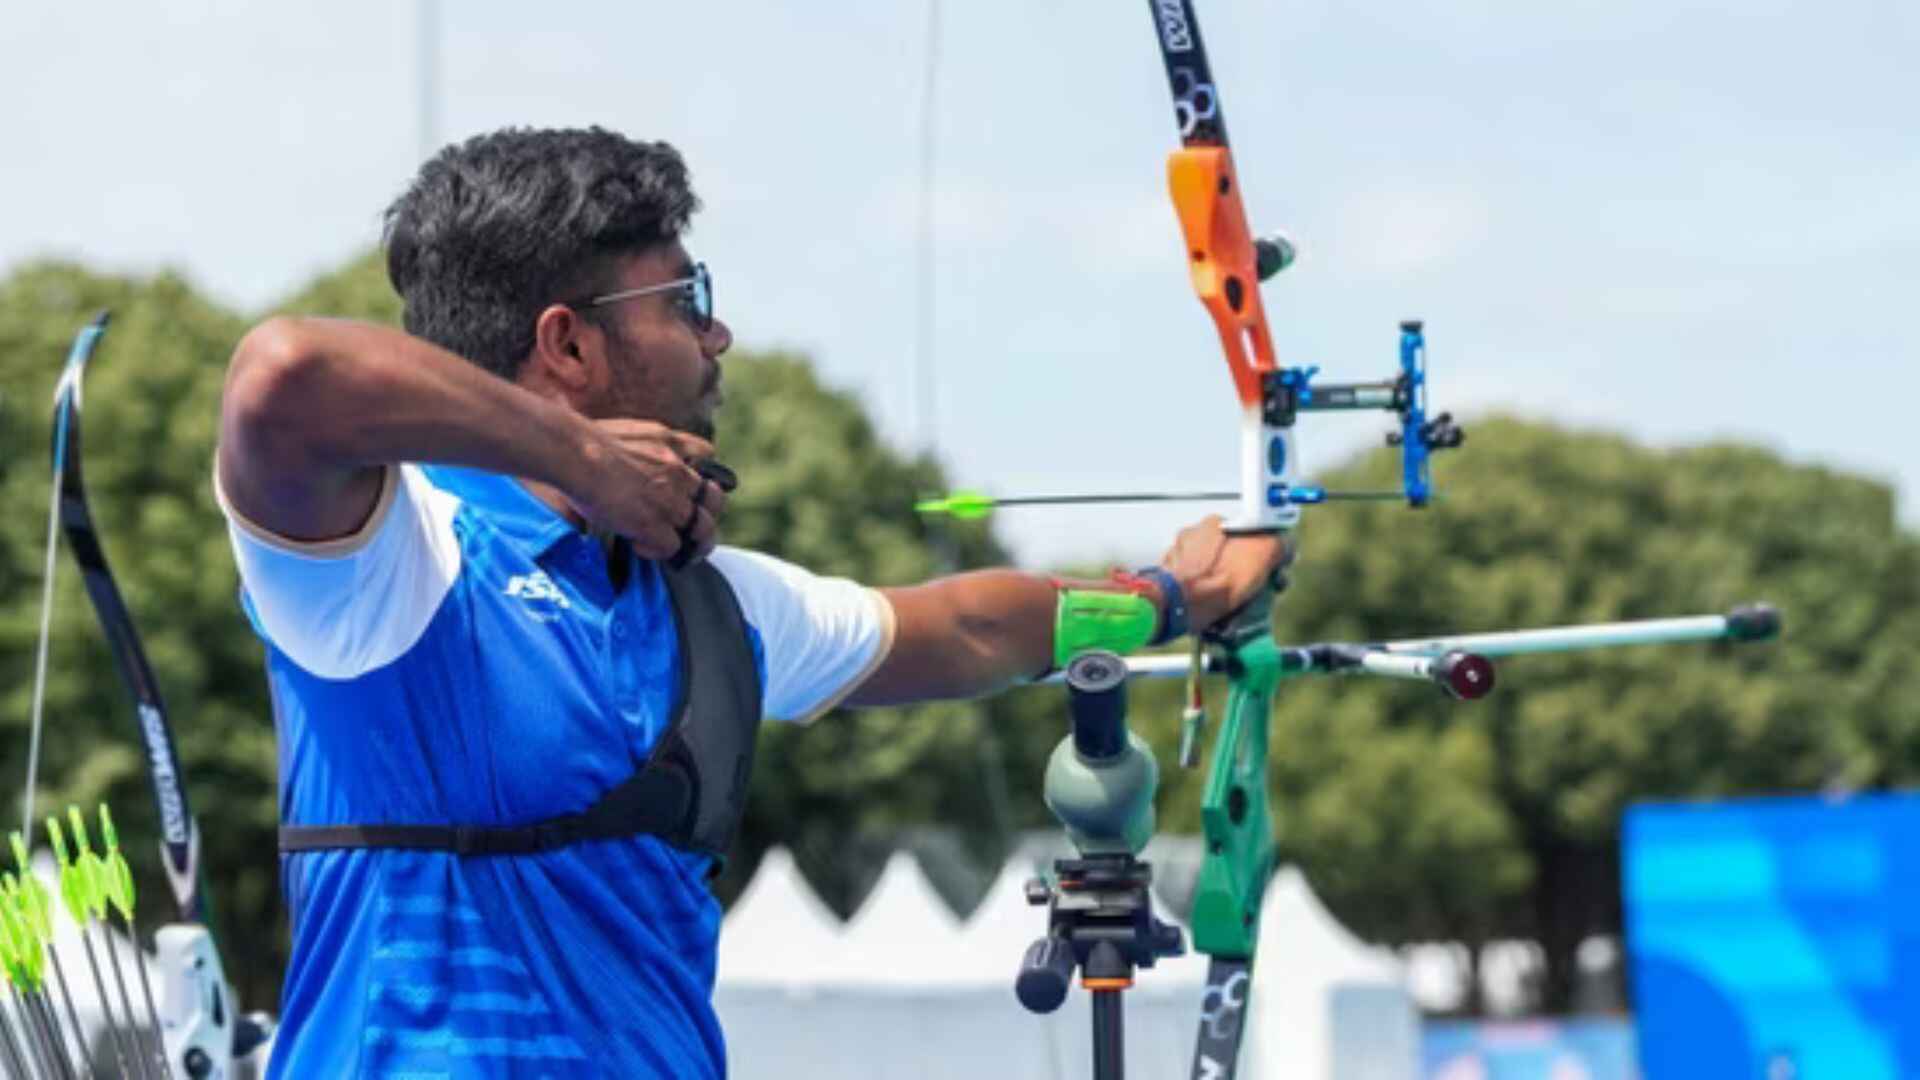 Paris Olympics 2024: Indian Men’s, Women’s Recurve Archery Teams Advance To Quarter-Finals